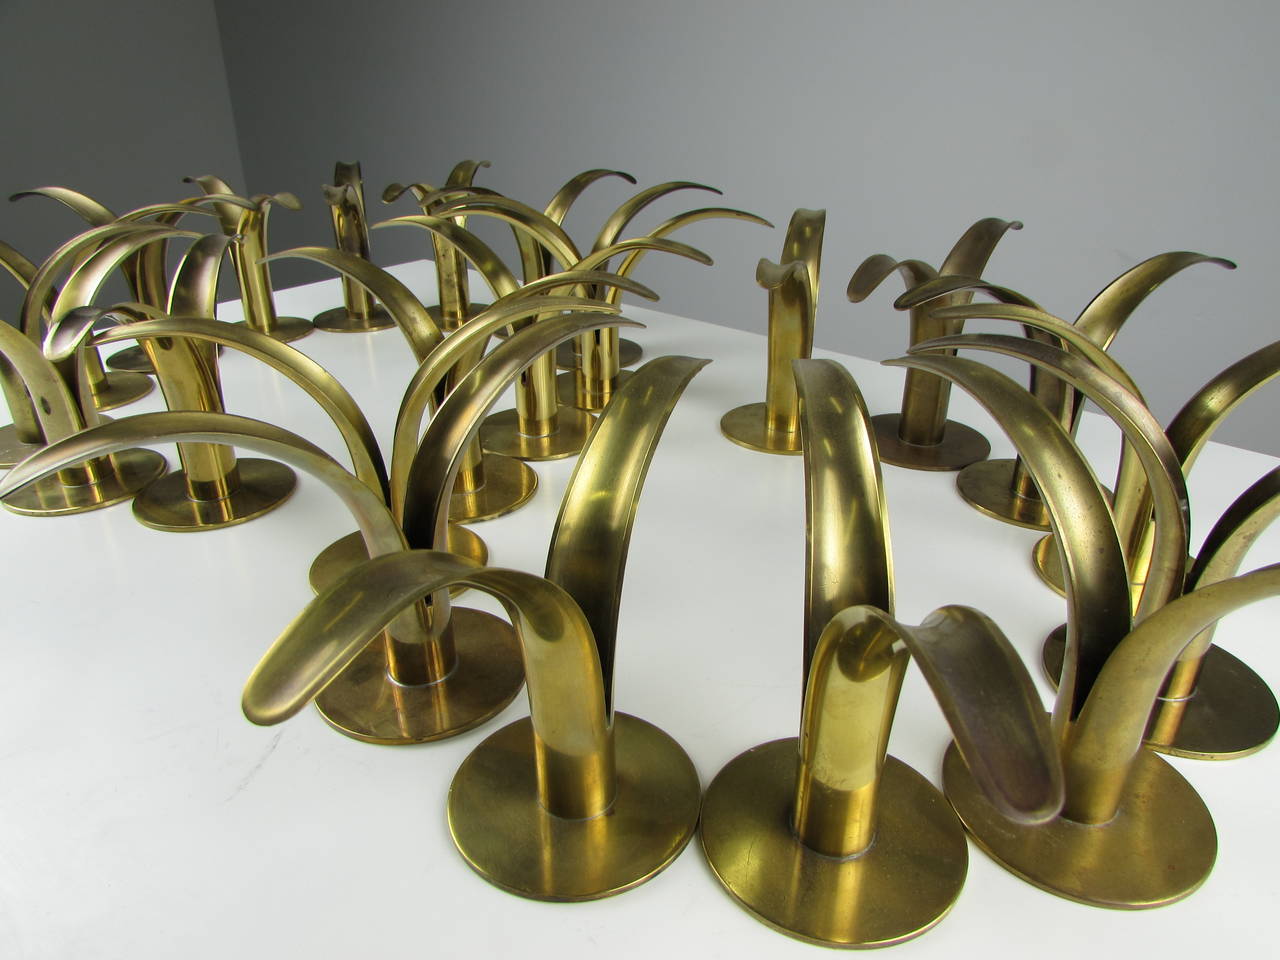 Flock of Brass Candleholders by Ivar Ålenius Björk for Ystad Metall, 1939 1